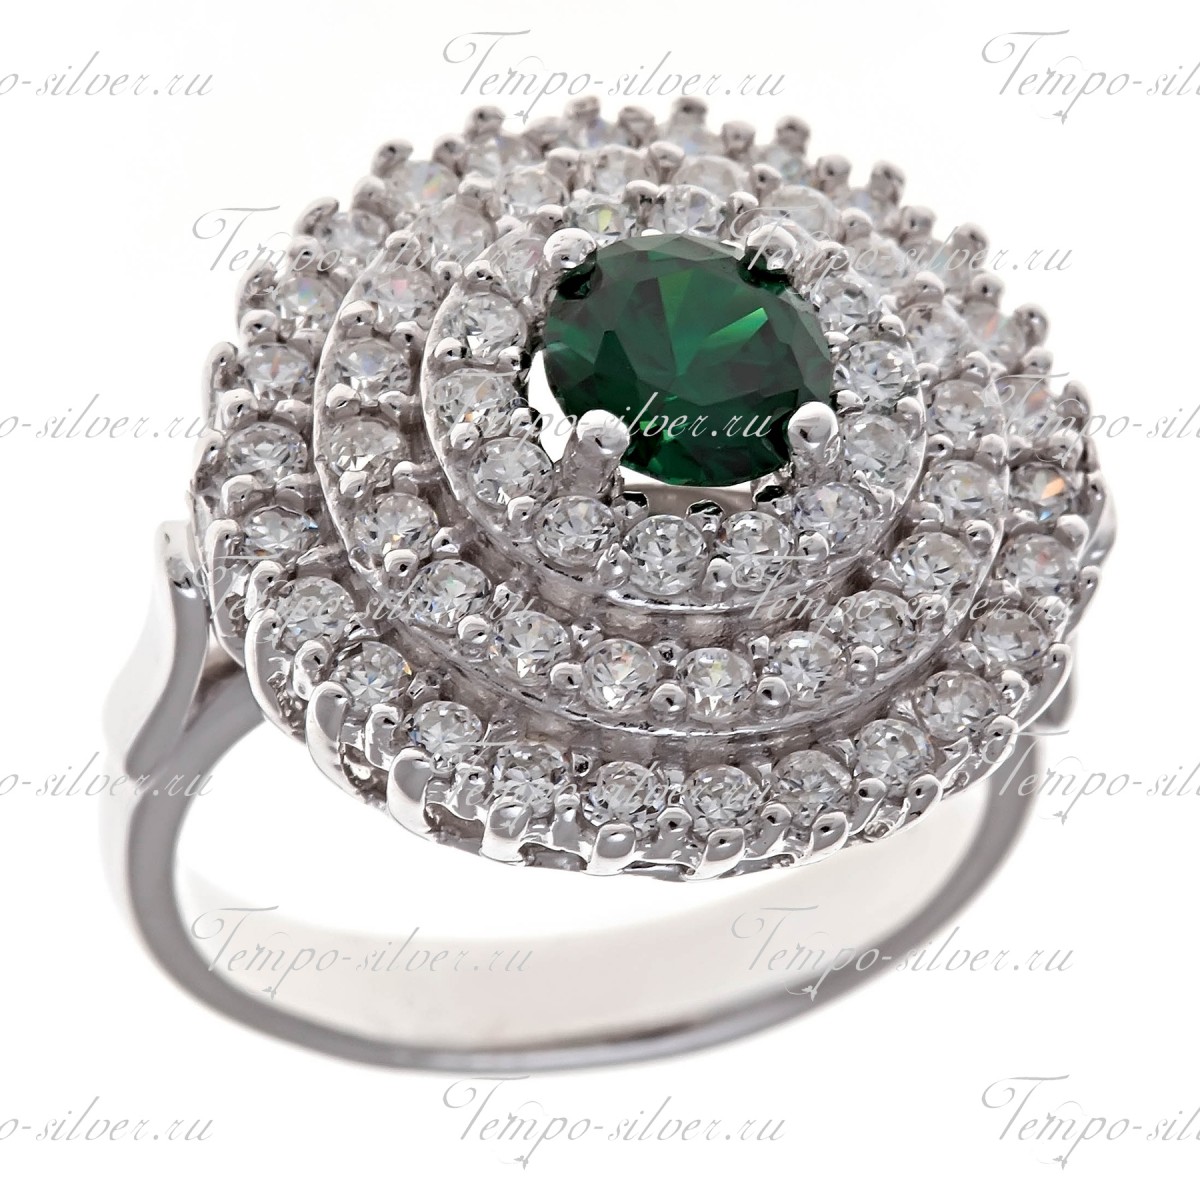 Кольцо серебряное круглой формы с зеленым камнем в центре цена